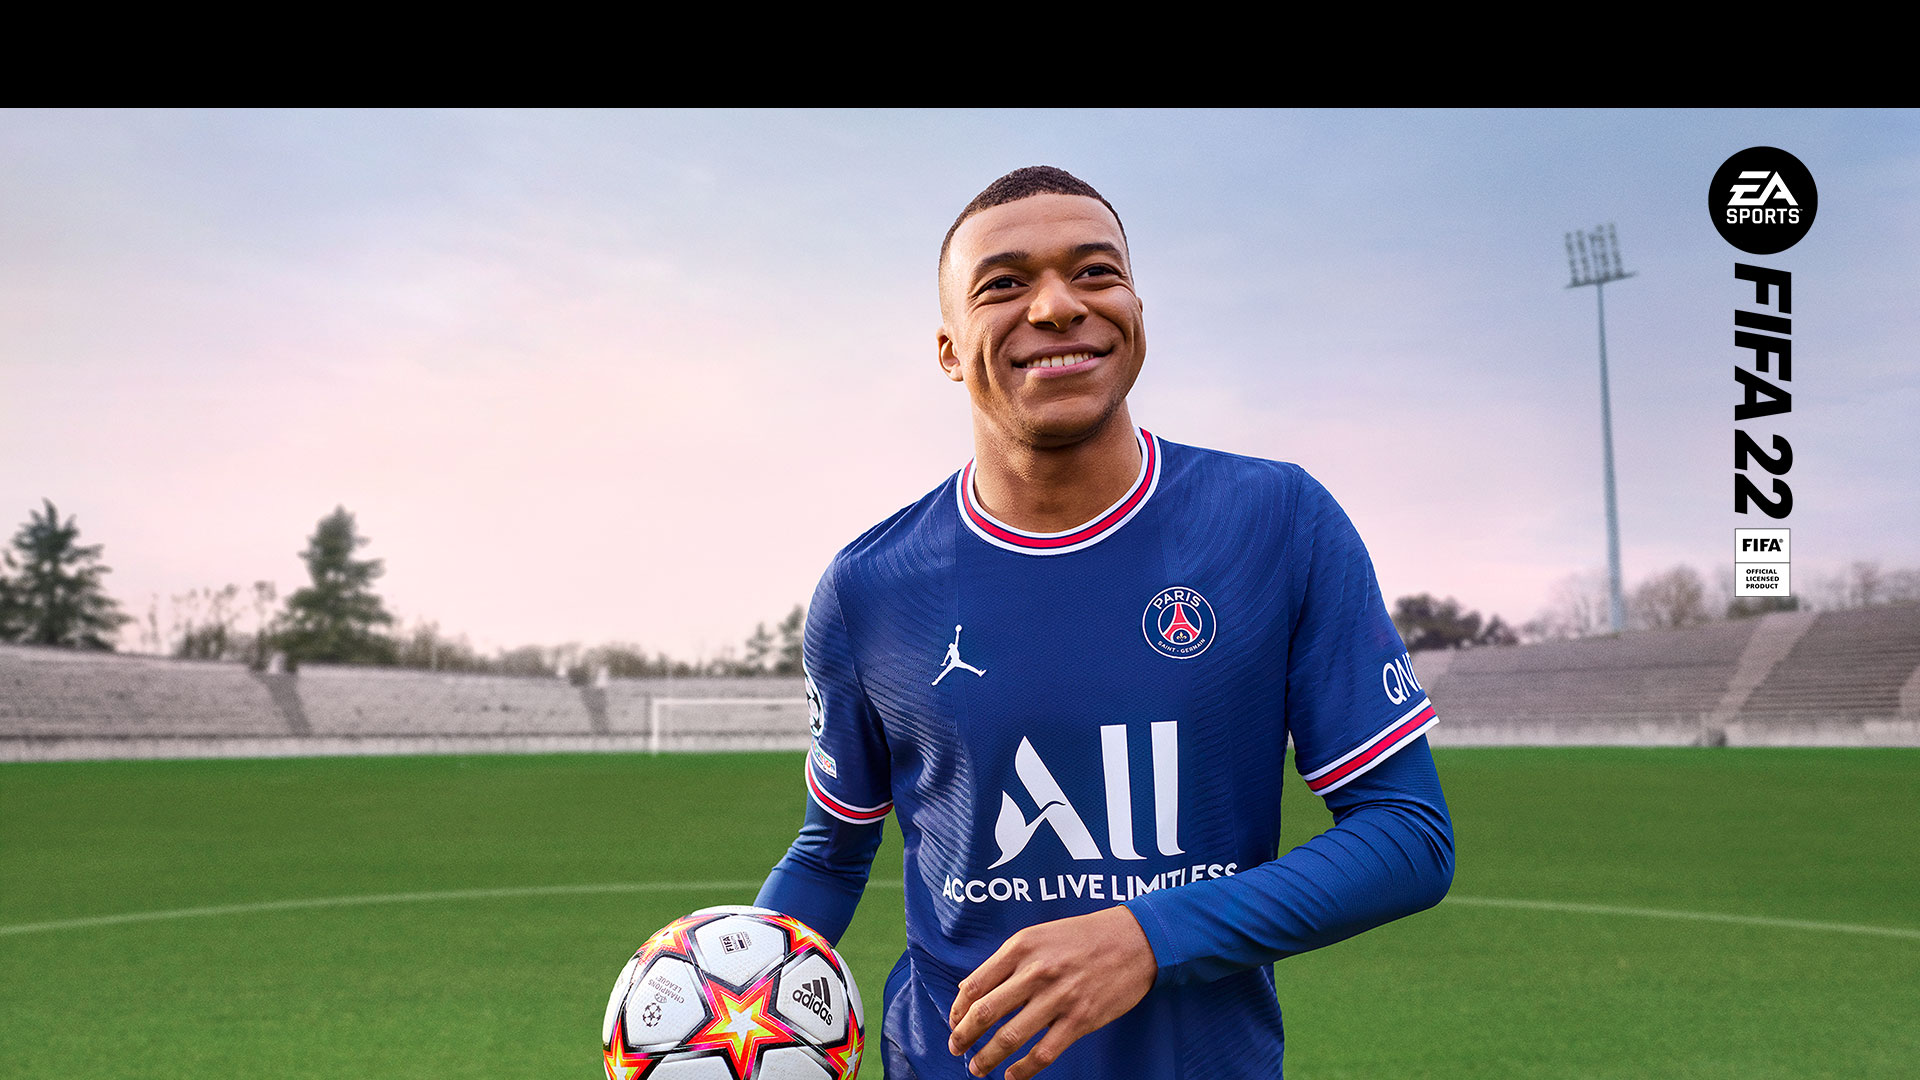 EA Sports, FIFA 22, produit officiel sous licence, un joueur souriant tient une balle dans un stade vide.